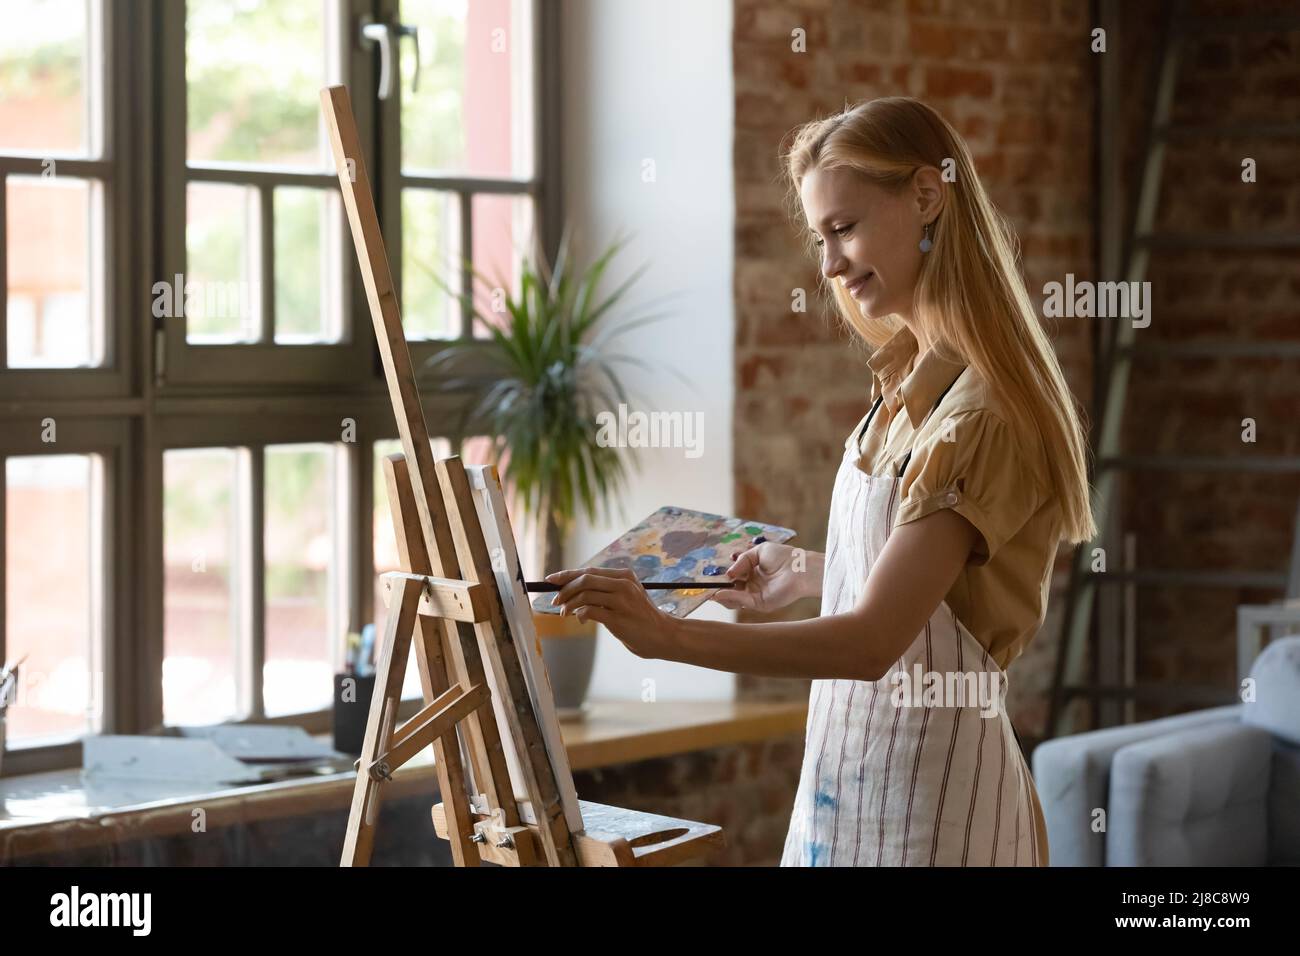 Pittore donna pittura immagine su tela sorrisi godere di hobby creativo Foto Stock